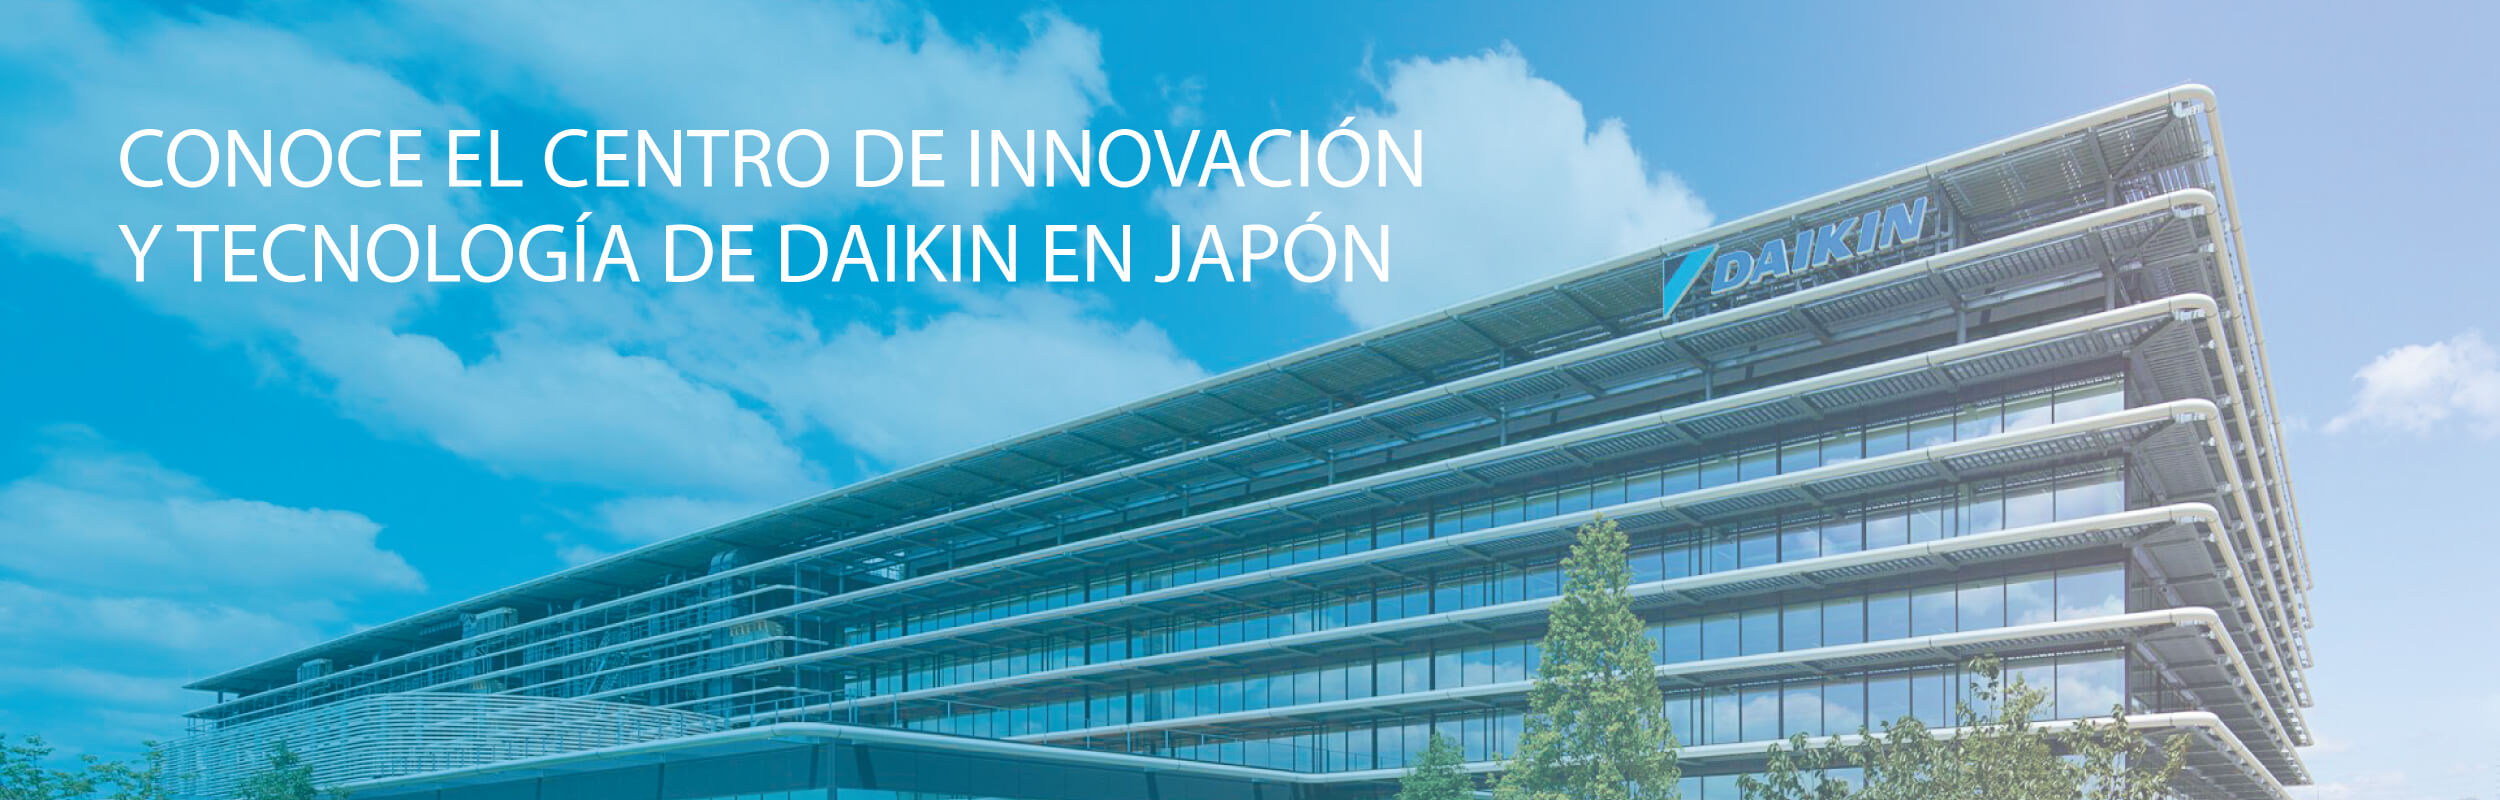 DAIKIN abre un nuevo centro de tecnología e innovación en Osaka, Japón